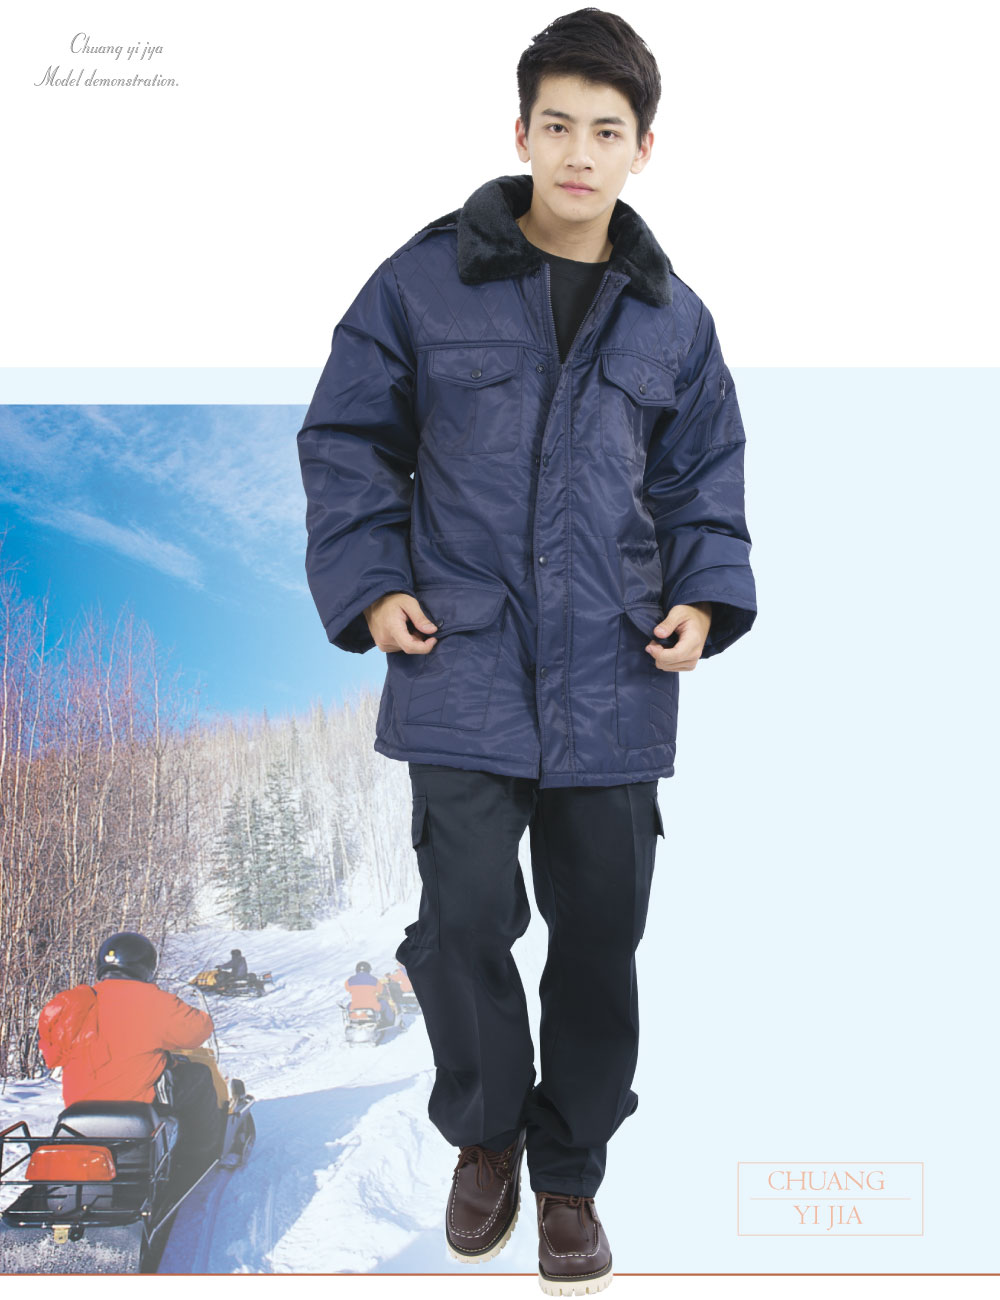 毛裡軍大衣,軍外套,創意家團體服,工作服,工作外套,選舉外套,多功能外套,休閒外套,品牌外套